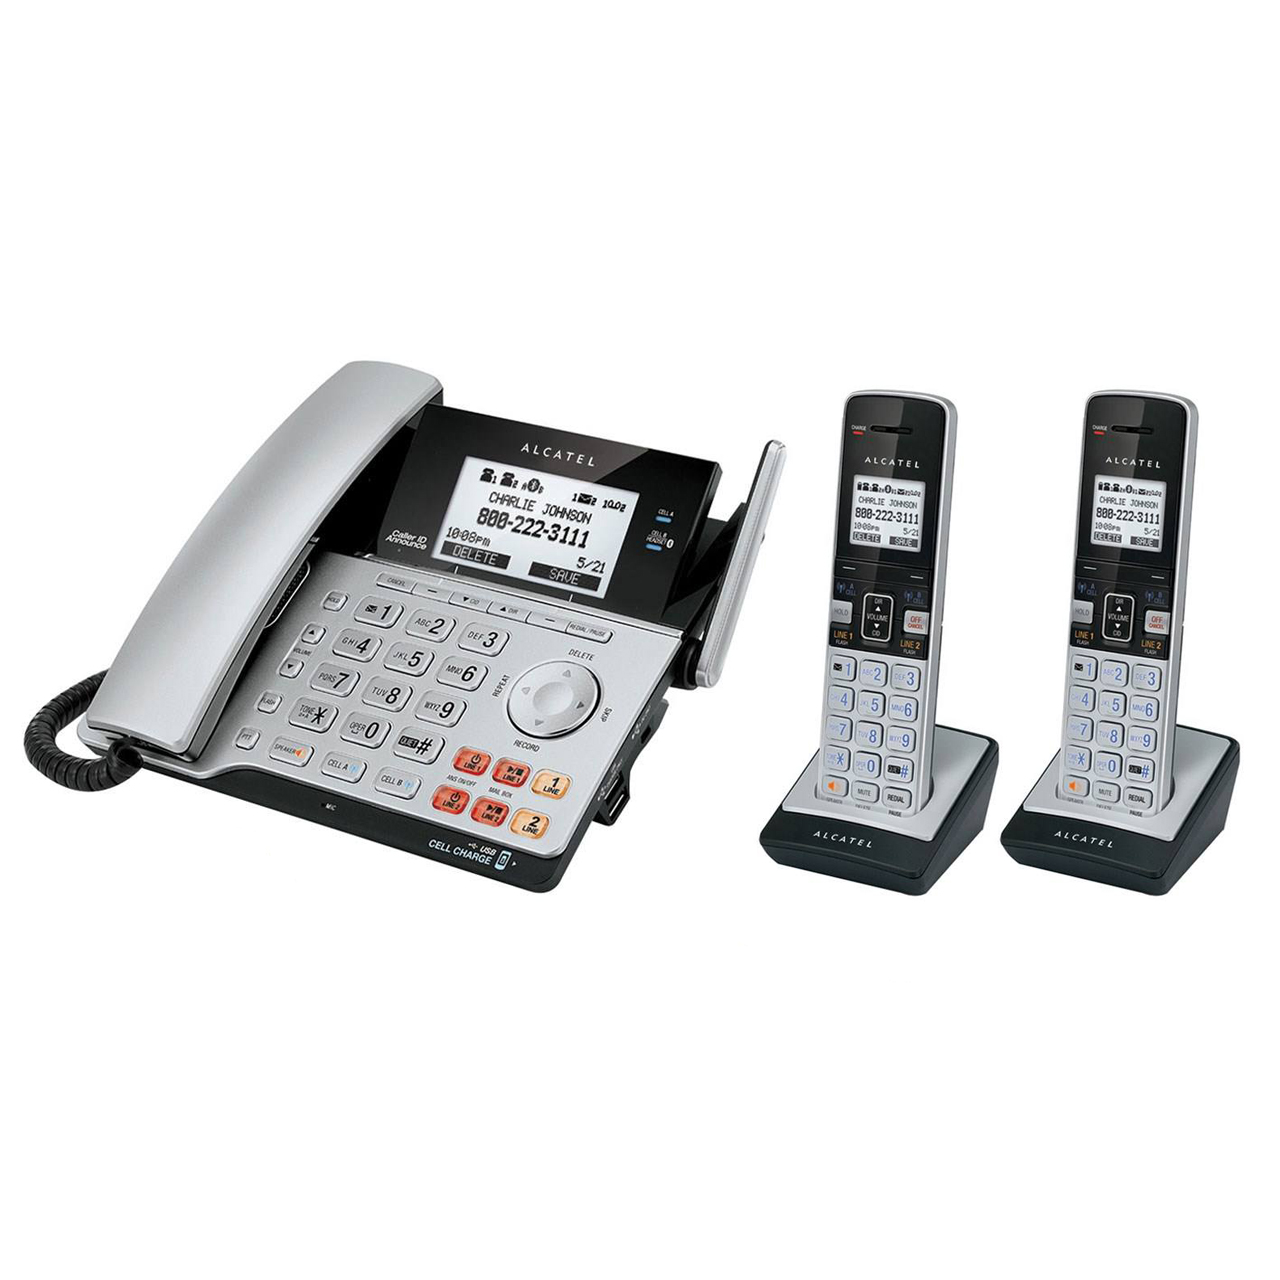 تلفن آلکاتل مدل Combo XPS 2120 Duo